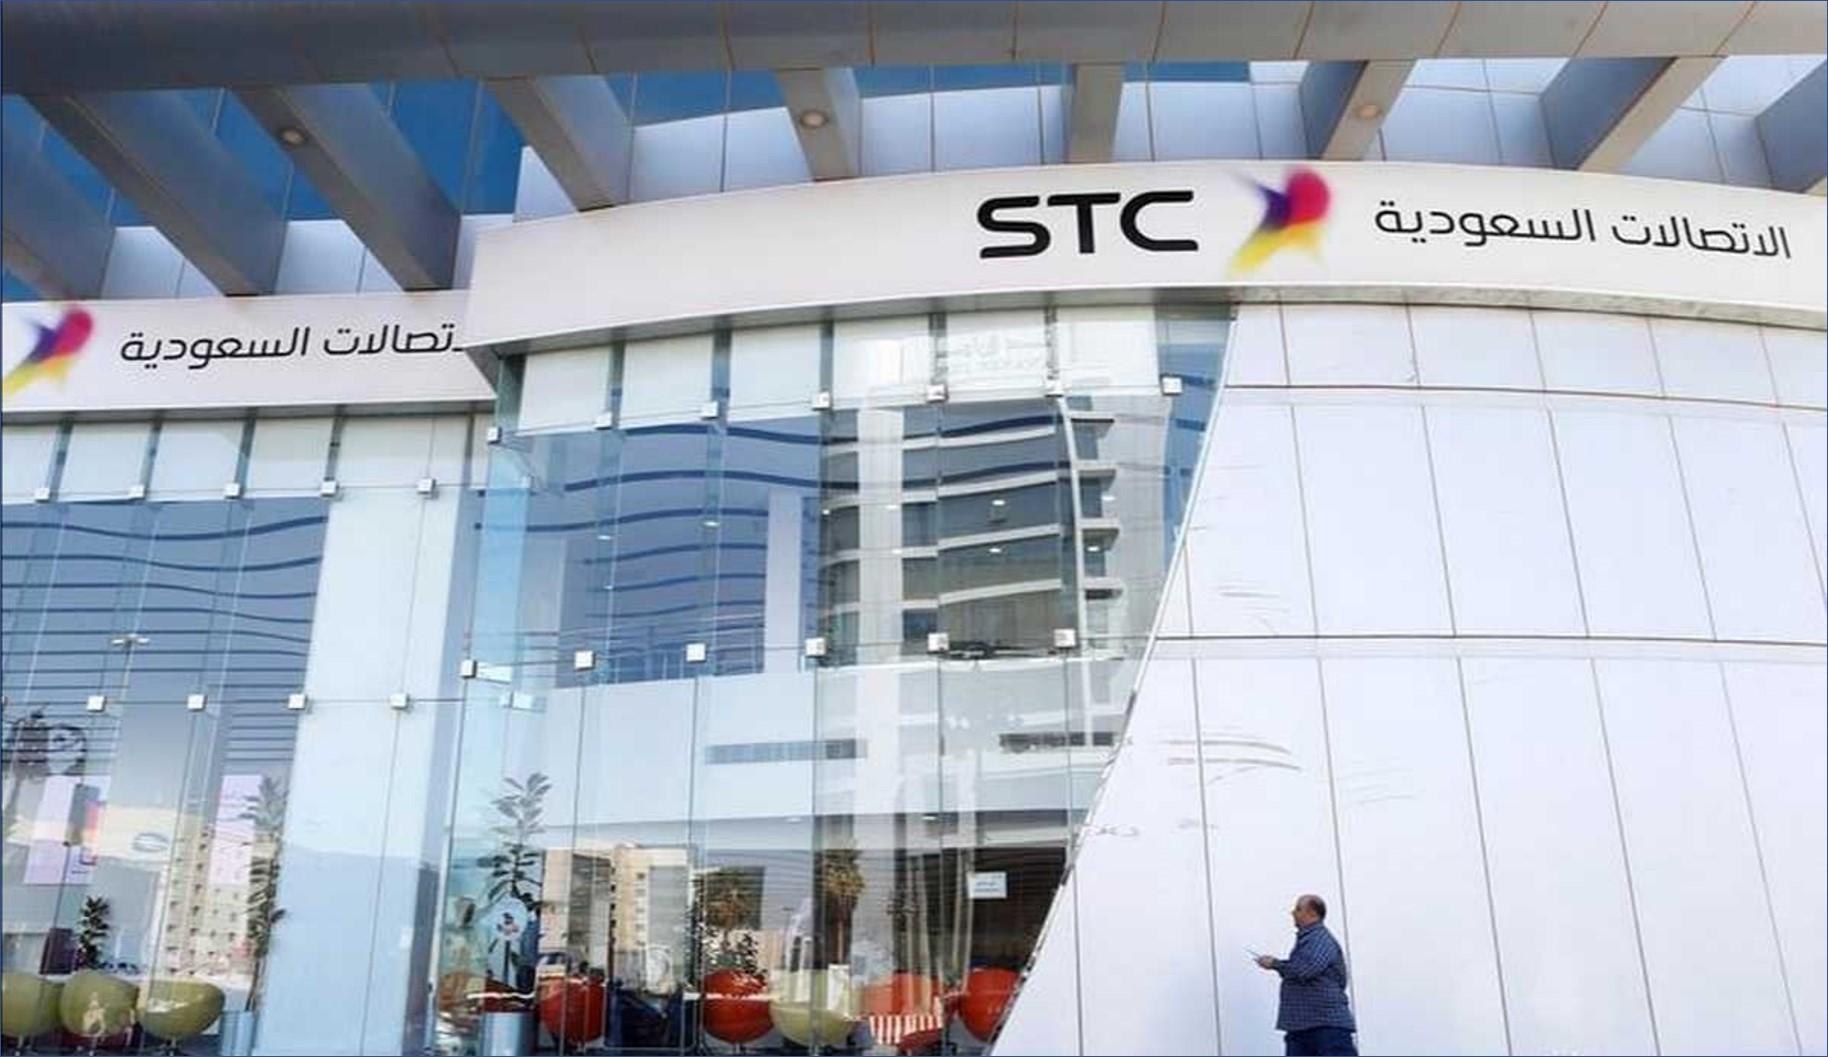 شركة الاتصالات السعودية STC تعلن عن وظائف جديدة بالرياض